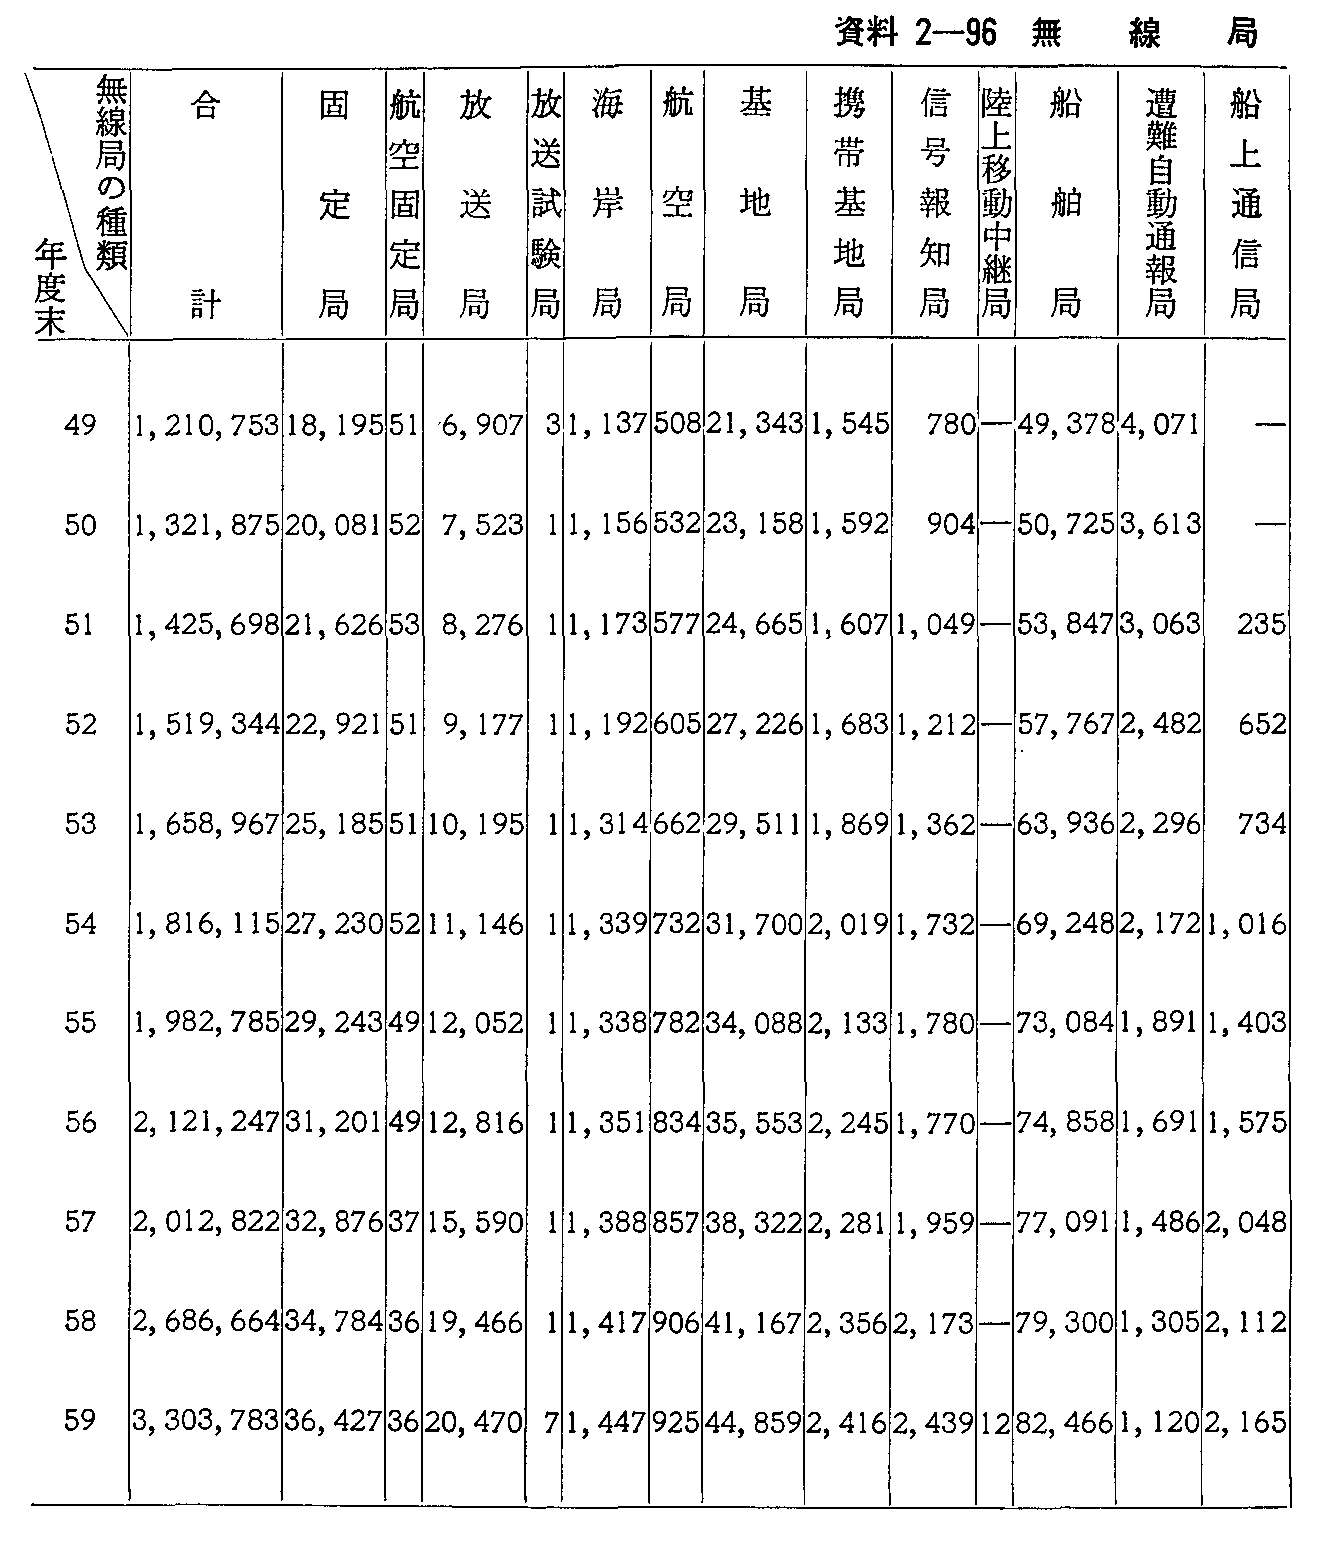 資料2-96 無線局数の推移(1)